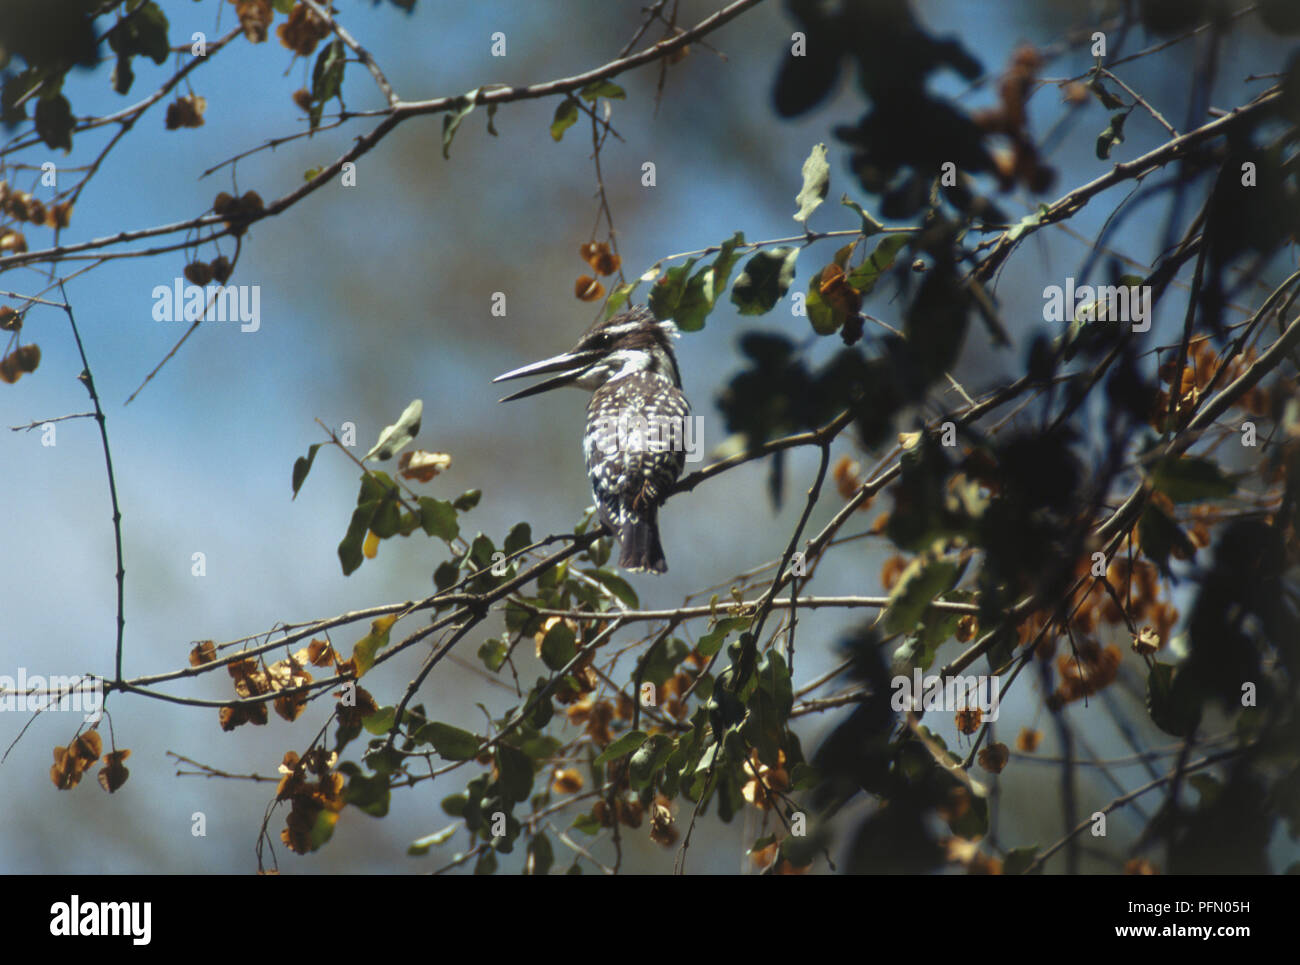 Ansicht der Rückseite des Pied Kingfisher, Ceryle rudis, Schwarz und Weiß gesprenkelten Federn, lange dünne Bill, hocken auf den grünen Zweig im Baum, Kopf und Schnabel im Profil. Stockfoto